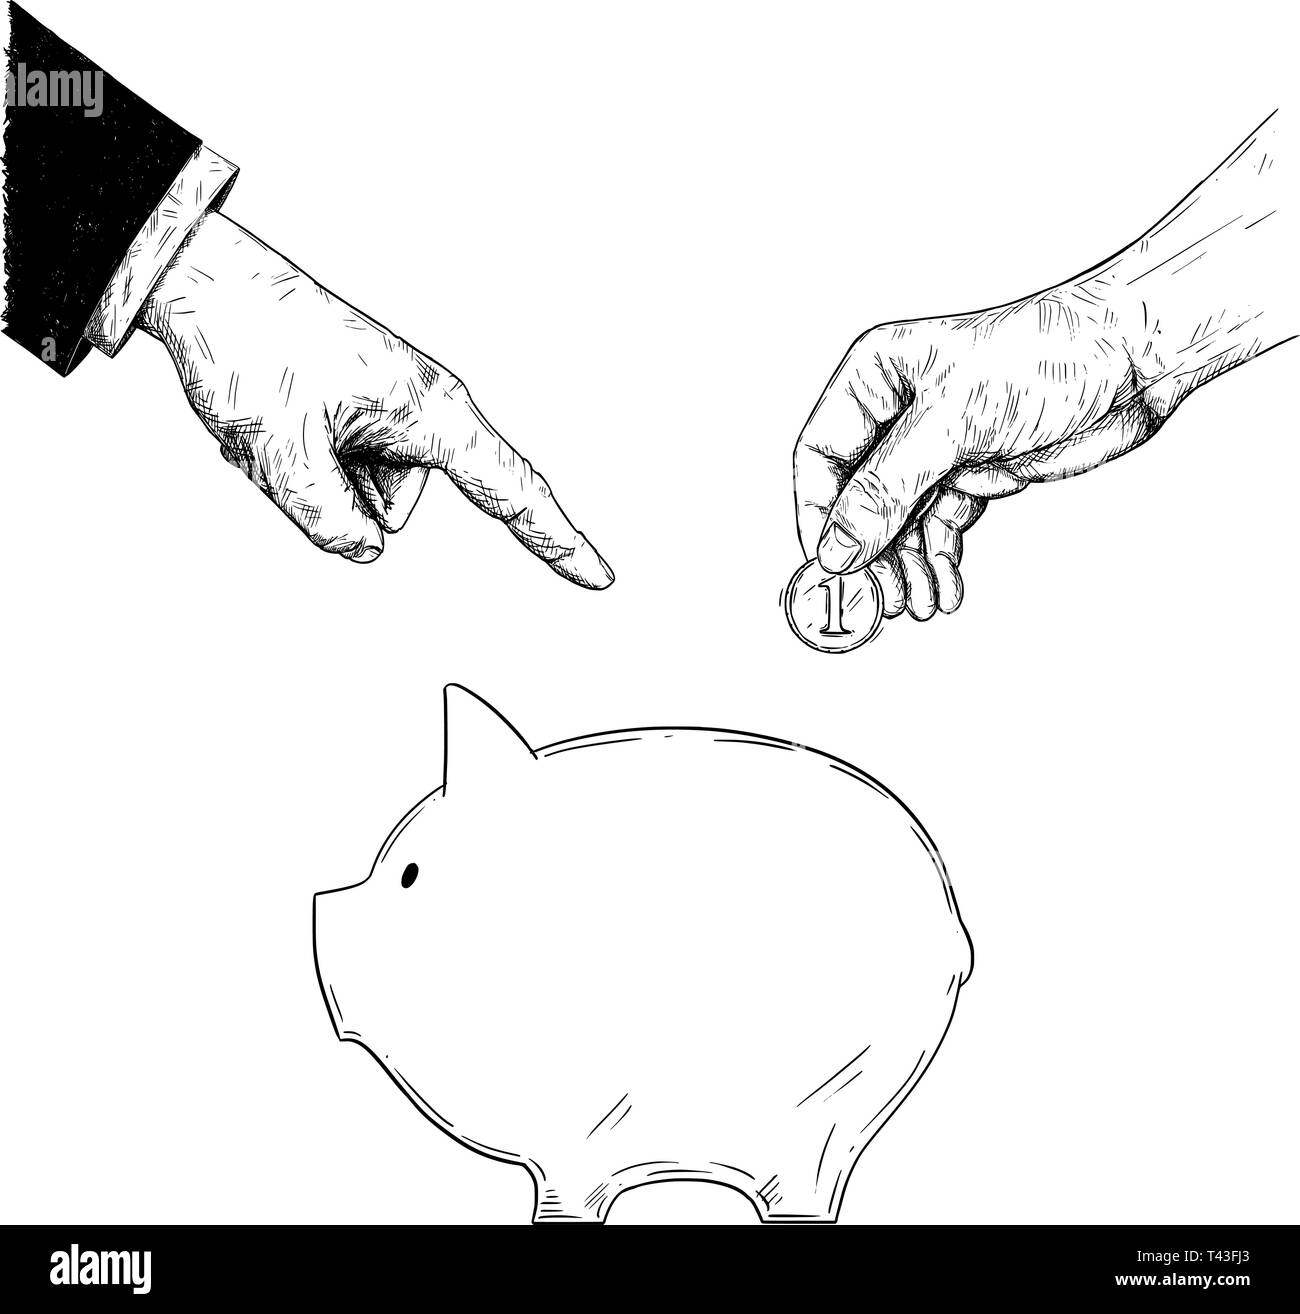 Vector schwarz-weißen Zeichnung von Hand der Politiker oder Unternehmer ist die Bestellung oder die Beratung eine gewöhnliche Person Münze, die Einsparungen im Sparschwein zu setzen. Metapher der Investition und Finanzierung. Stock Vektor